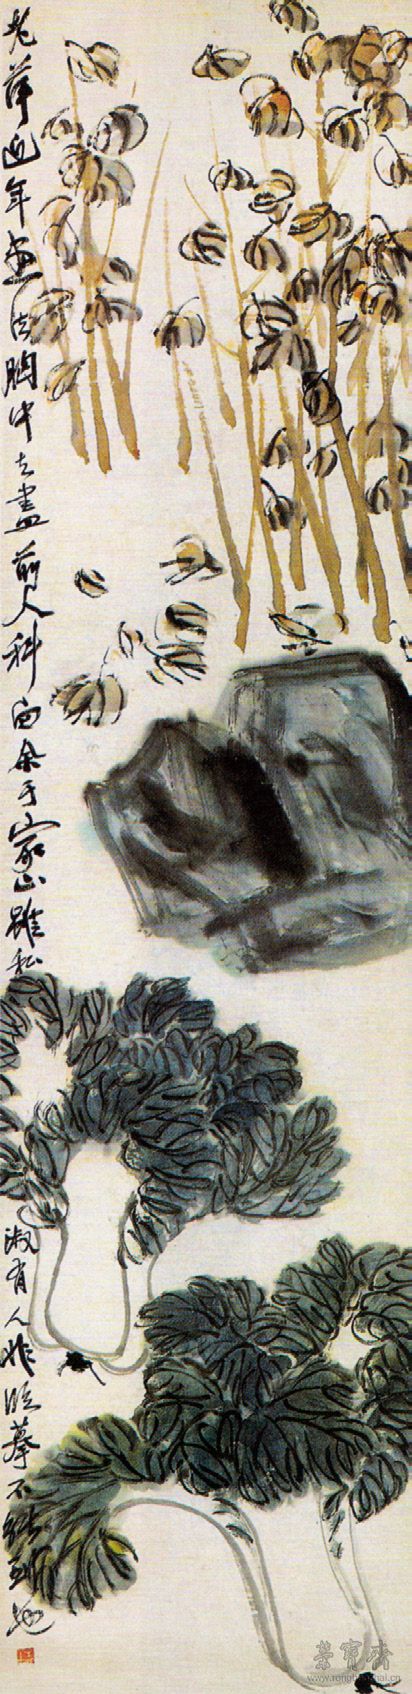 图10 齐白石 白菜北京画院藏